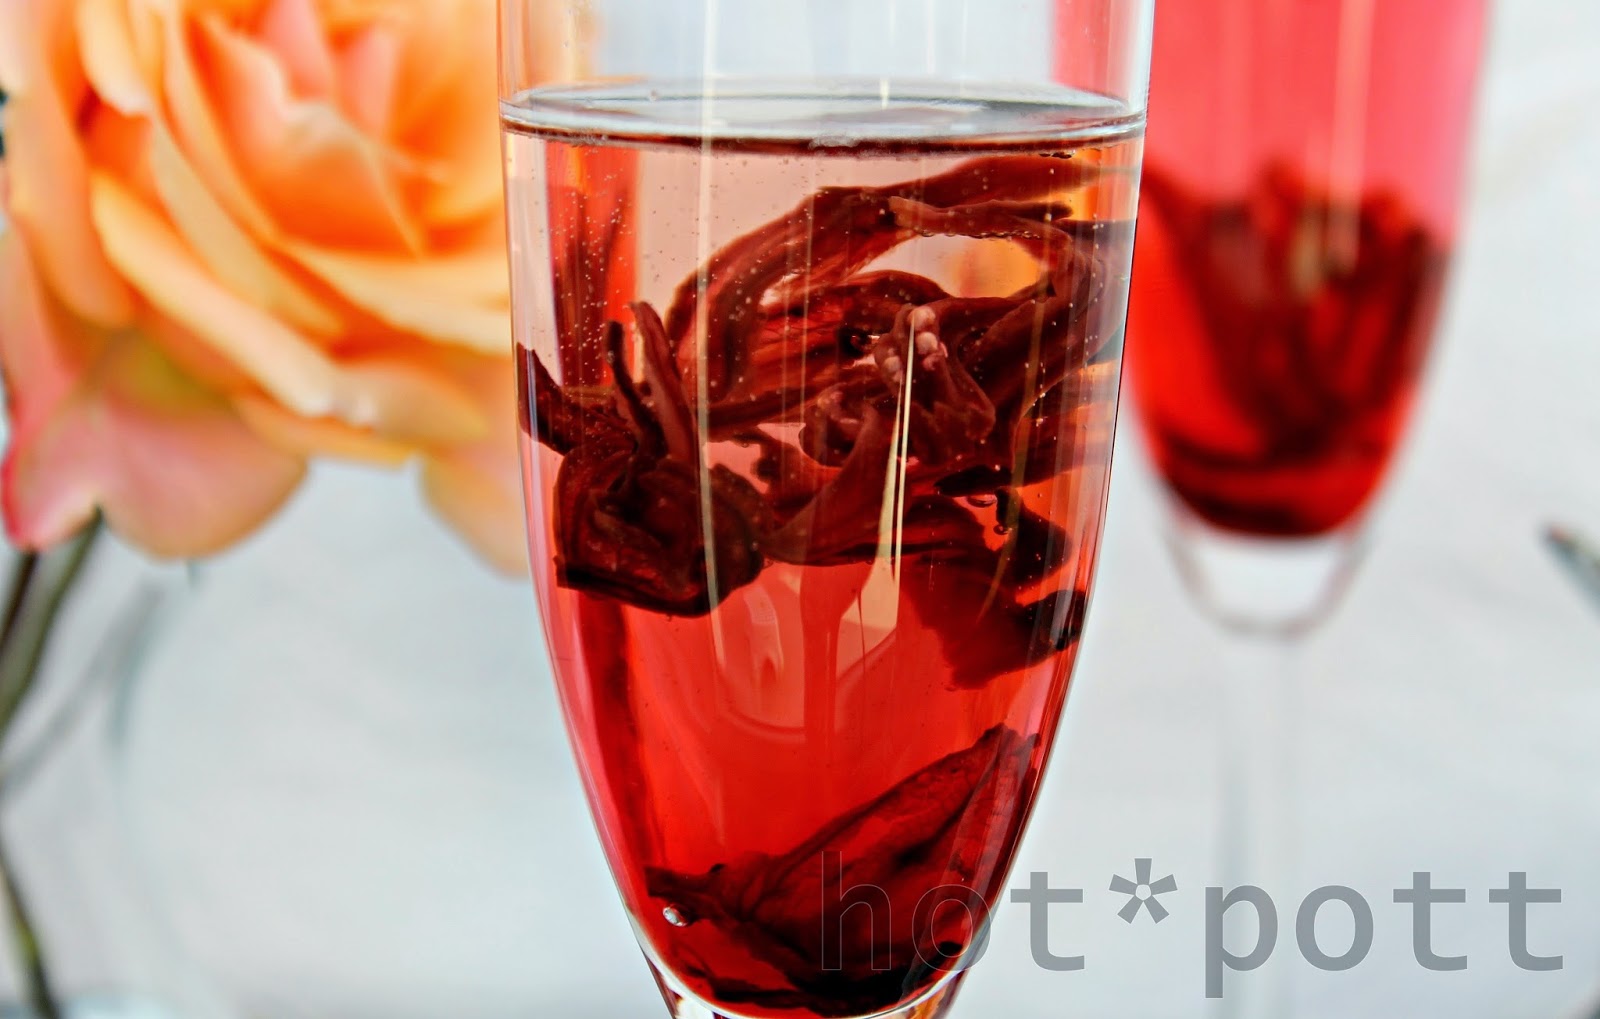 hot*pott: Hibiskusblüten in Sirup mit Kardamom - oder der perfekte ...